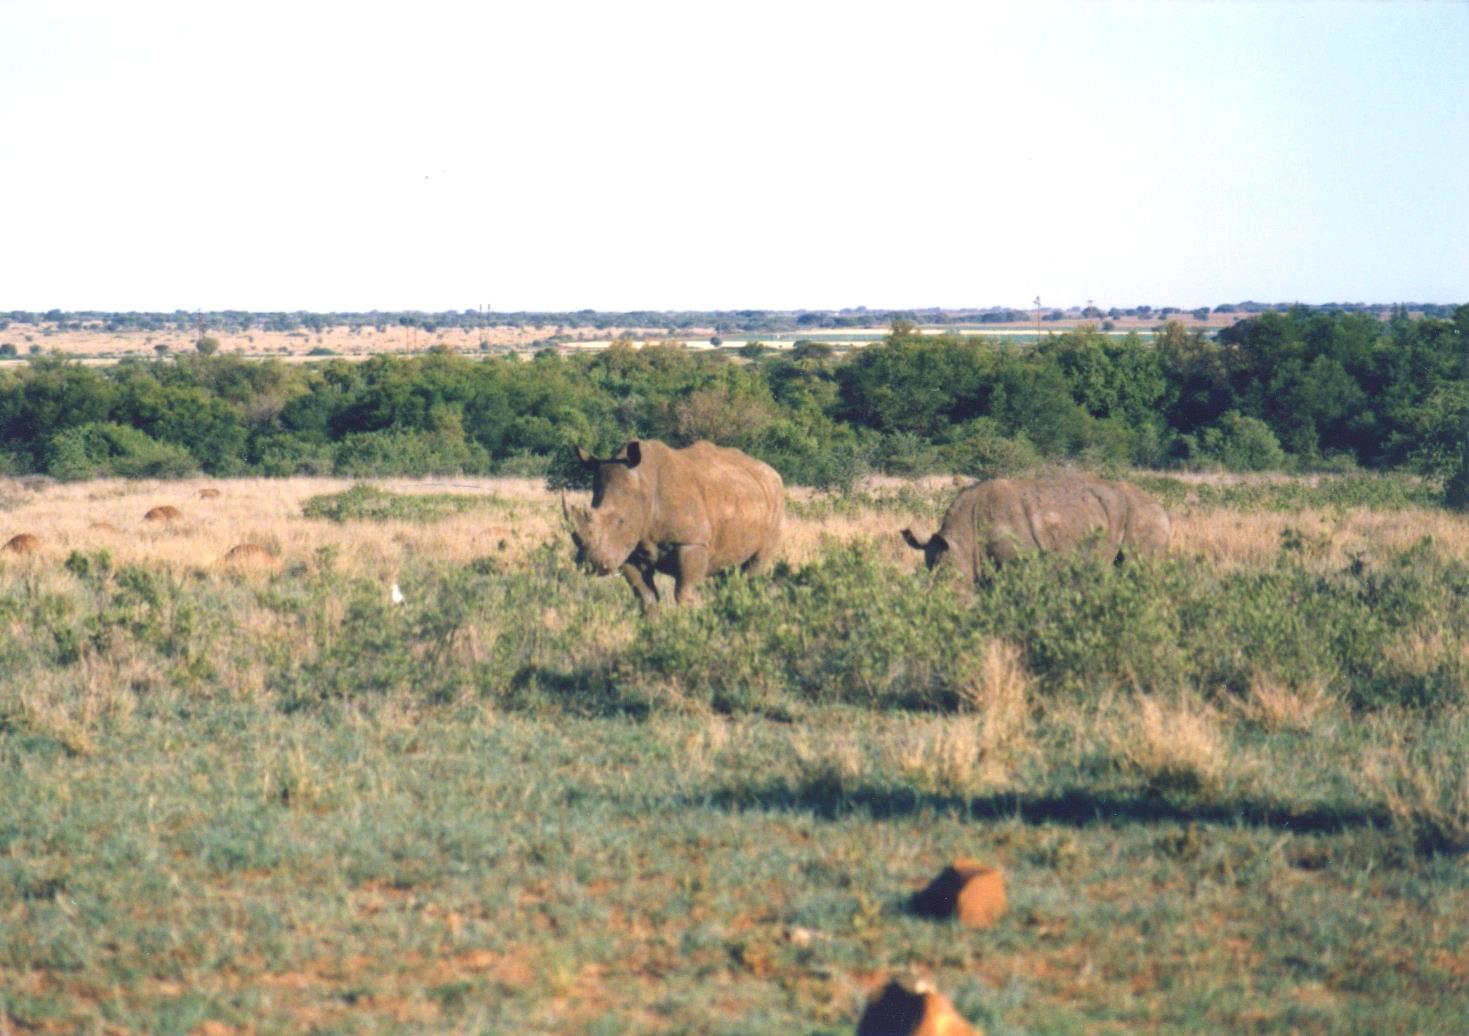 Rhino in field